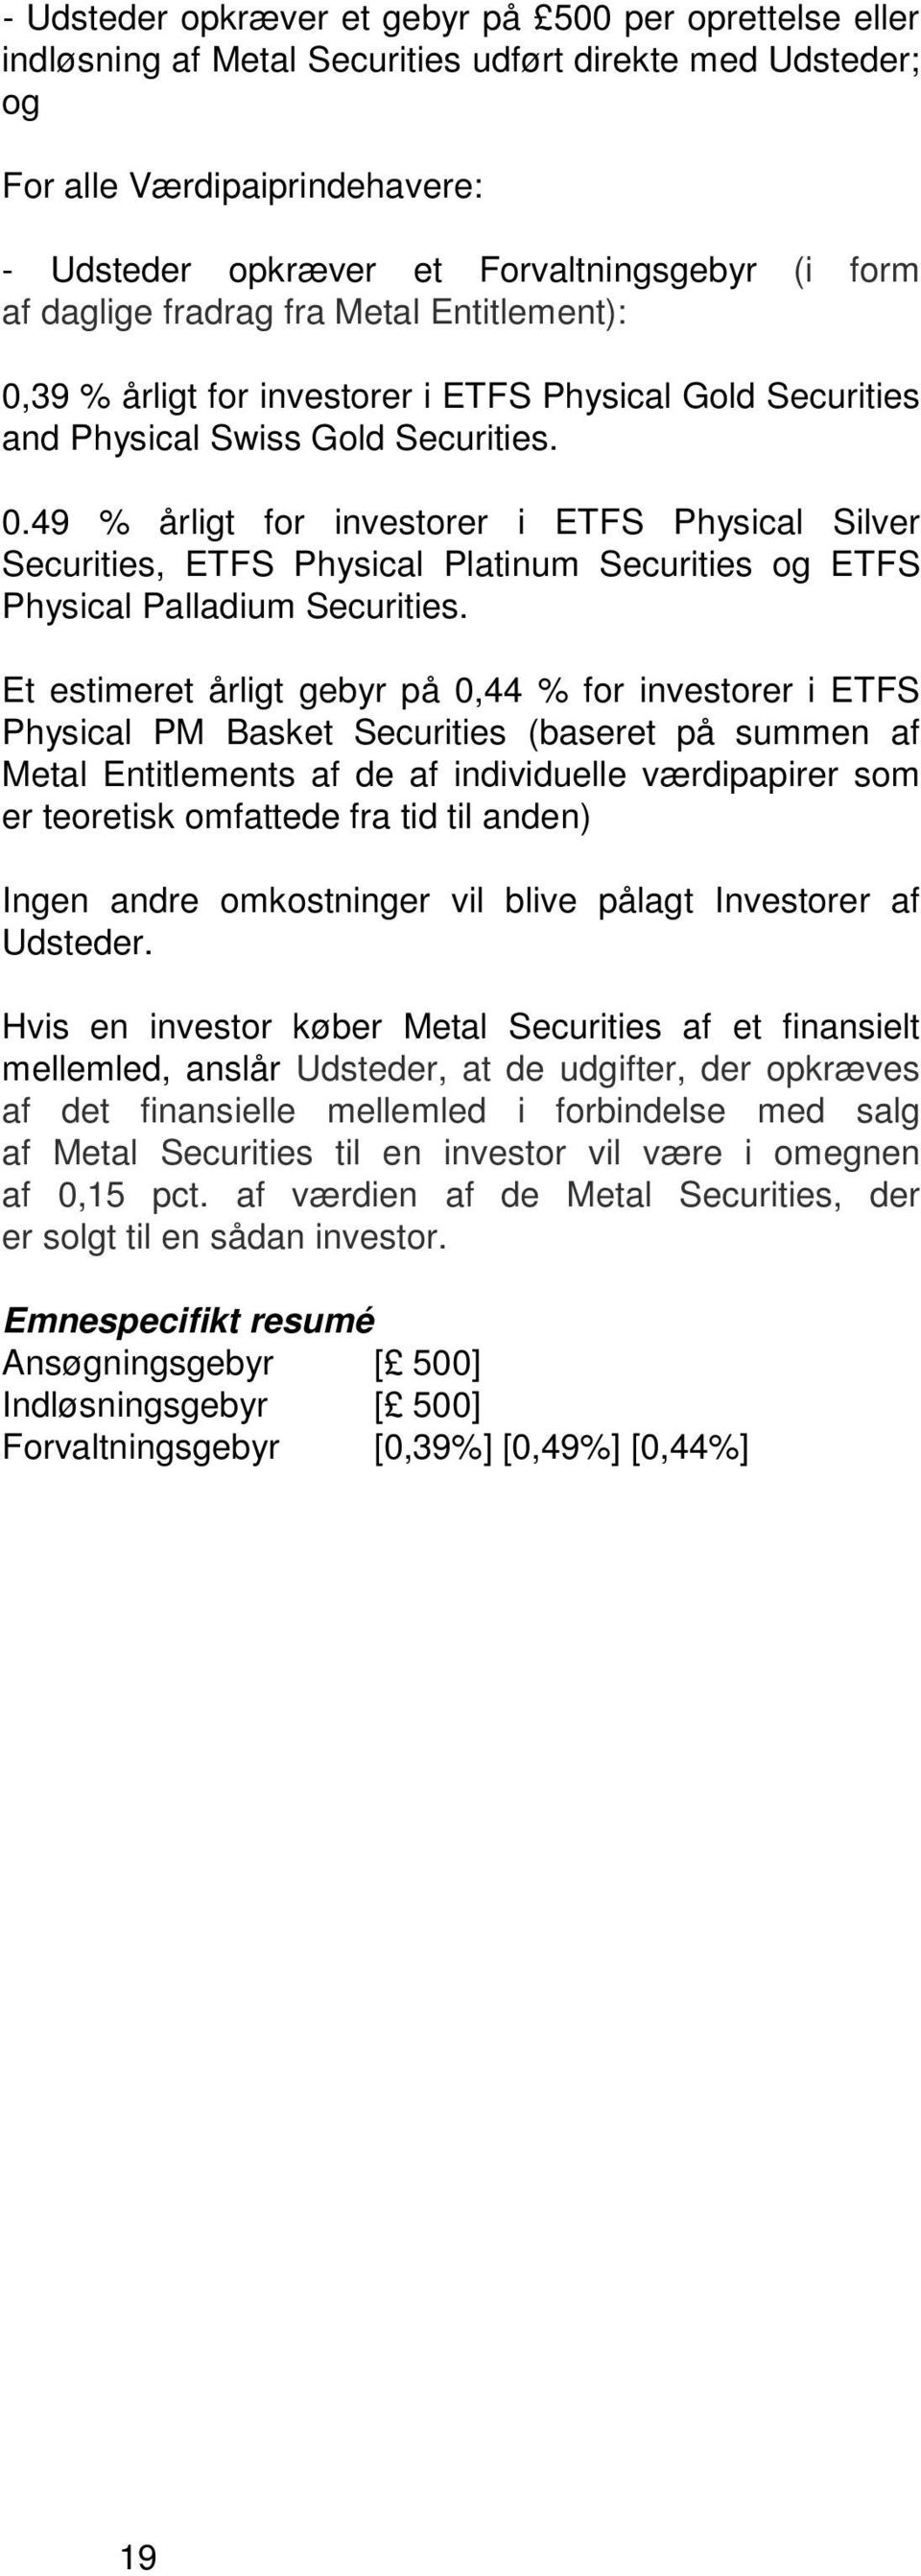 Et estimeret årligt gebyr på 0,44 % for investorer i ETFS Physical PM Basket Securities (baseret på summen af Metal Entitlements af de af individuelle værdipapirer som er teoretisk omfattede fra tid